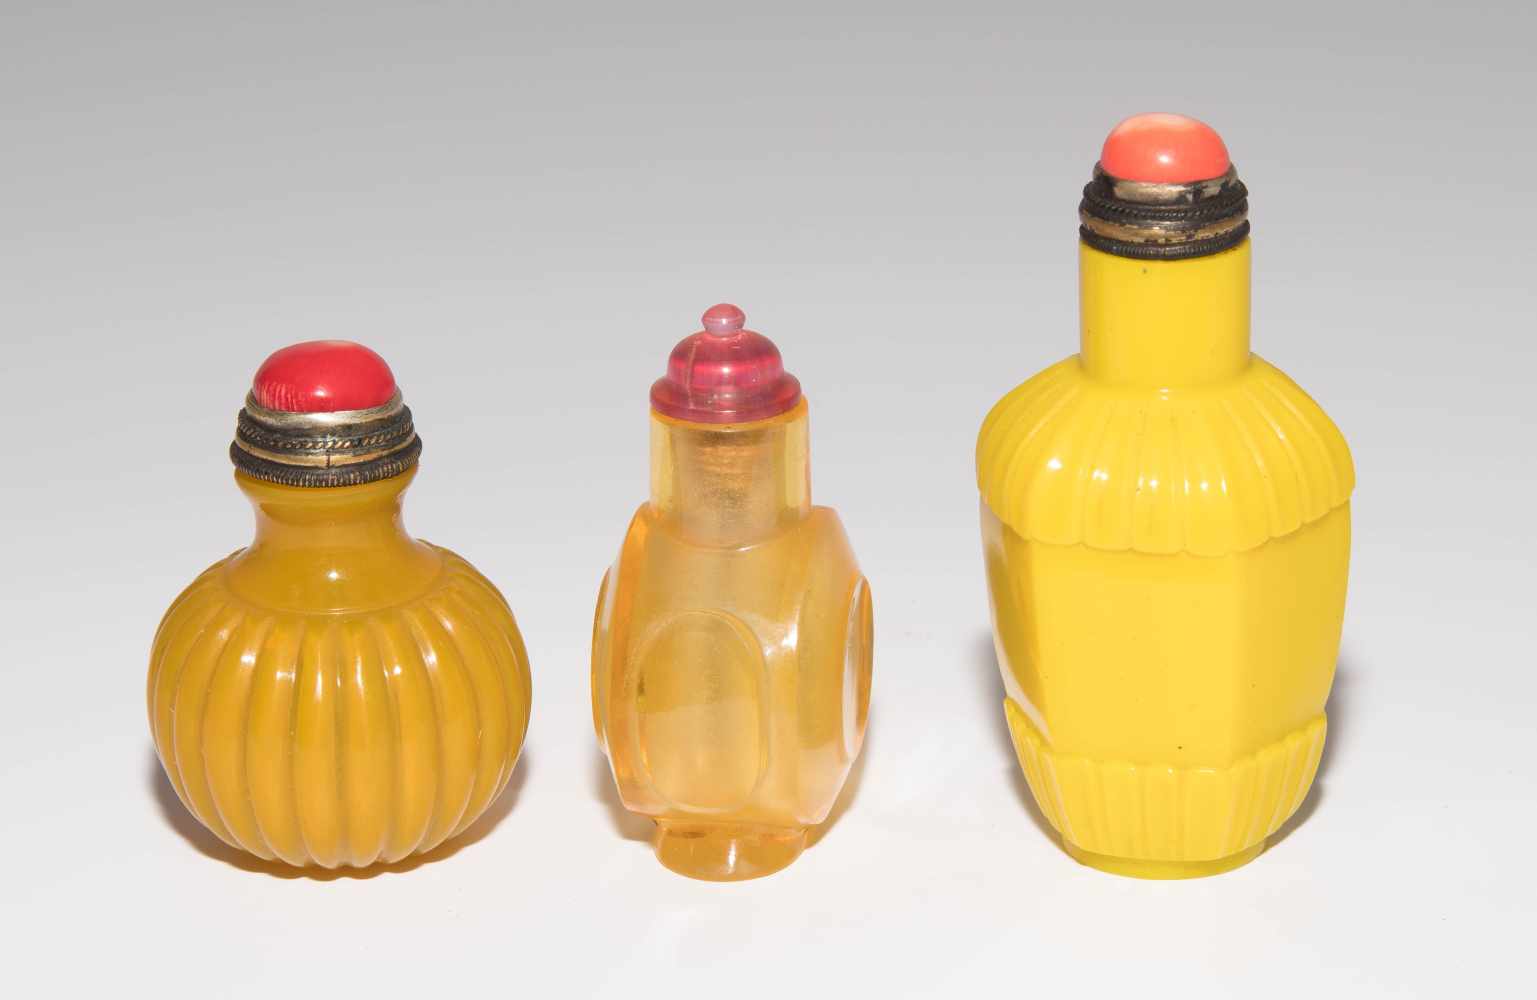 7 Glas Snuff BottlesChina. Halbtransparentes bis opakes Glas in verschiedenen Gelbtönen. H 5–8 cm. - Image 21 of 21